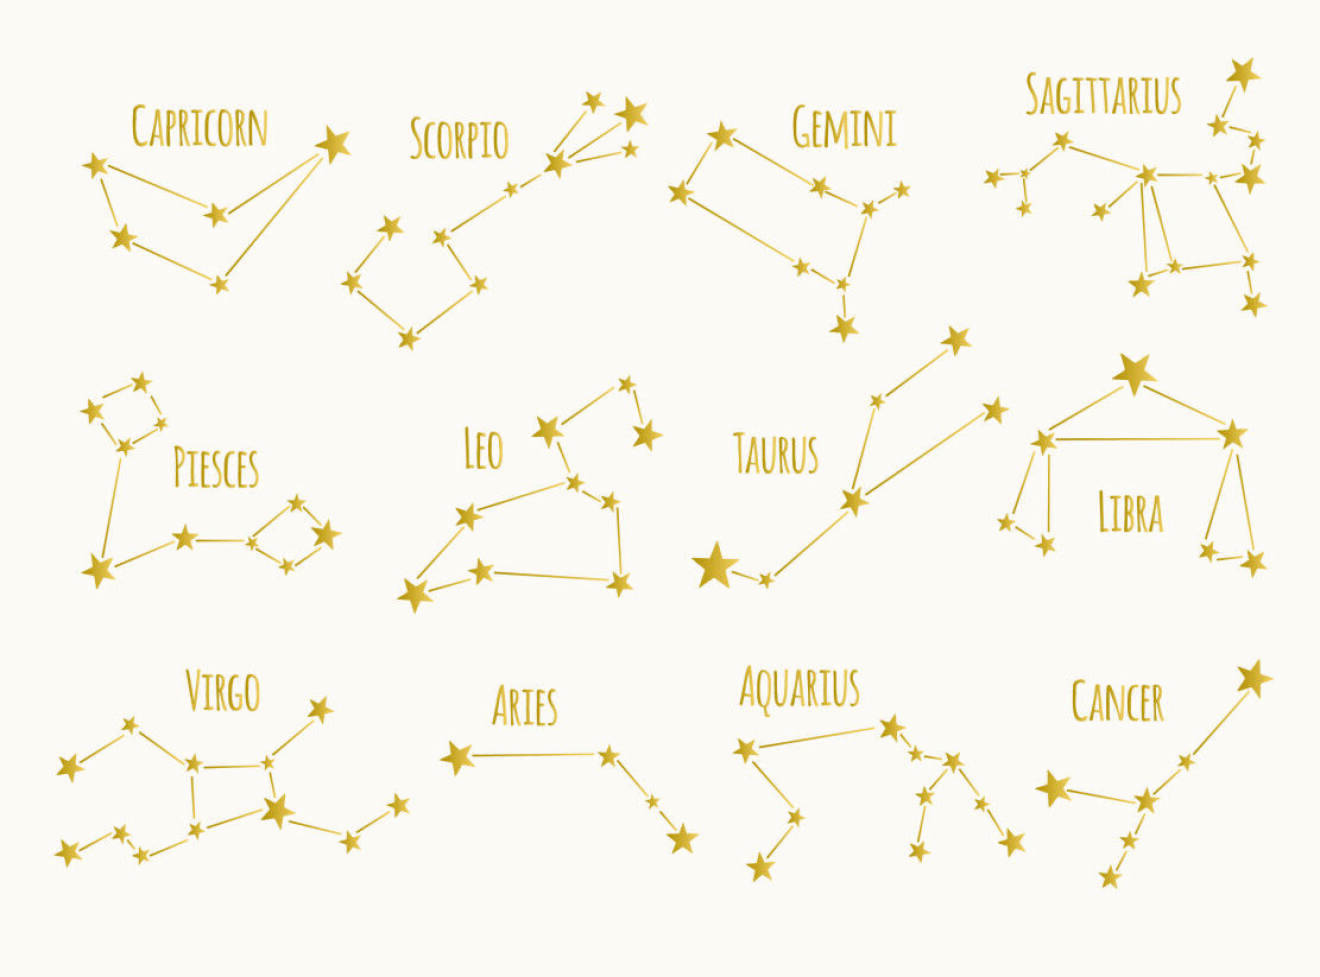 Alla stjärnbilder som bildar våra stjärntecken